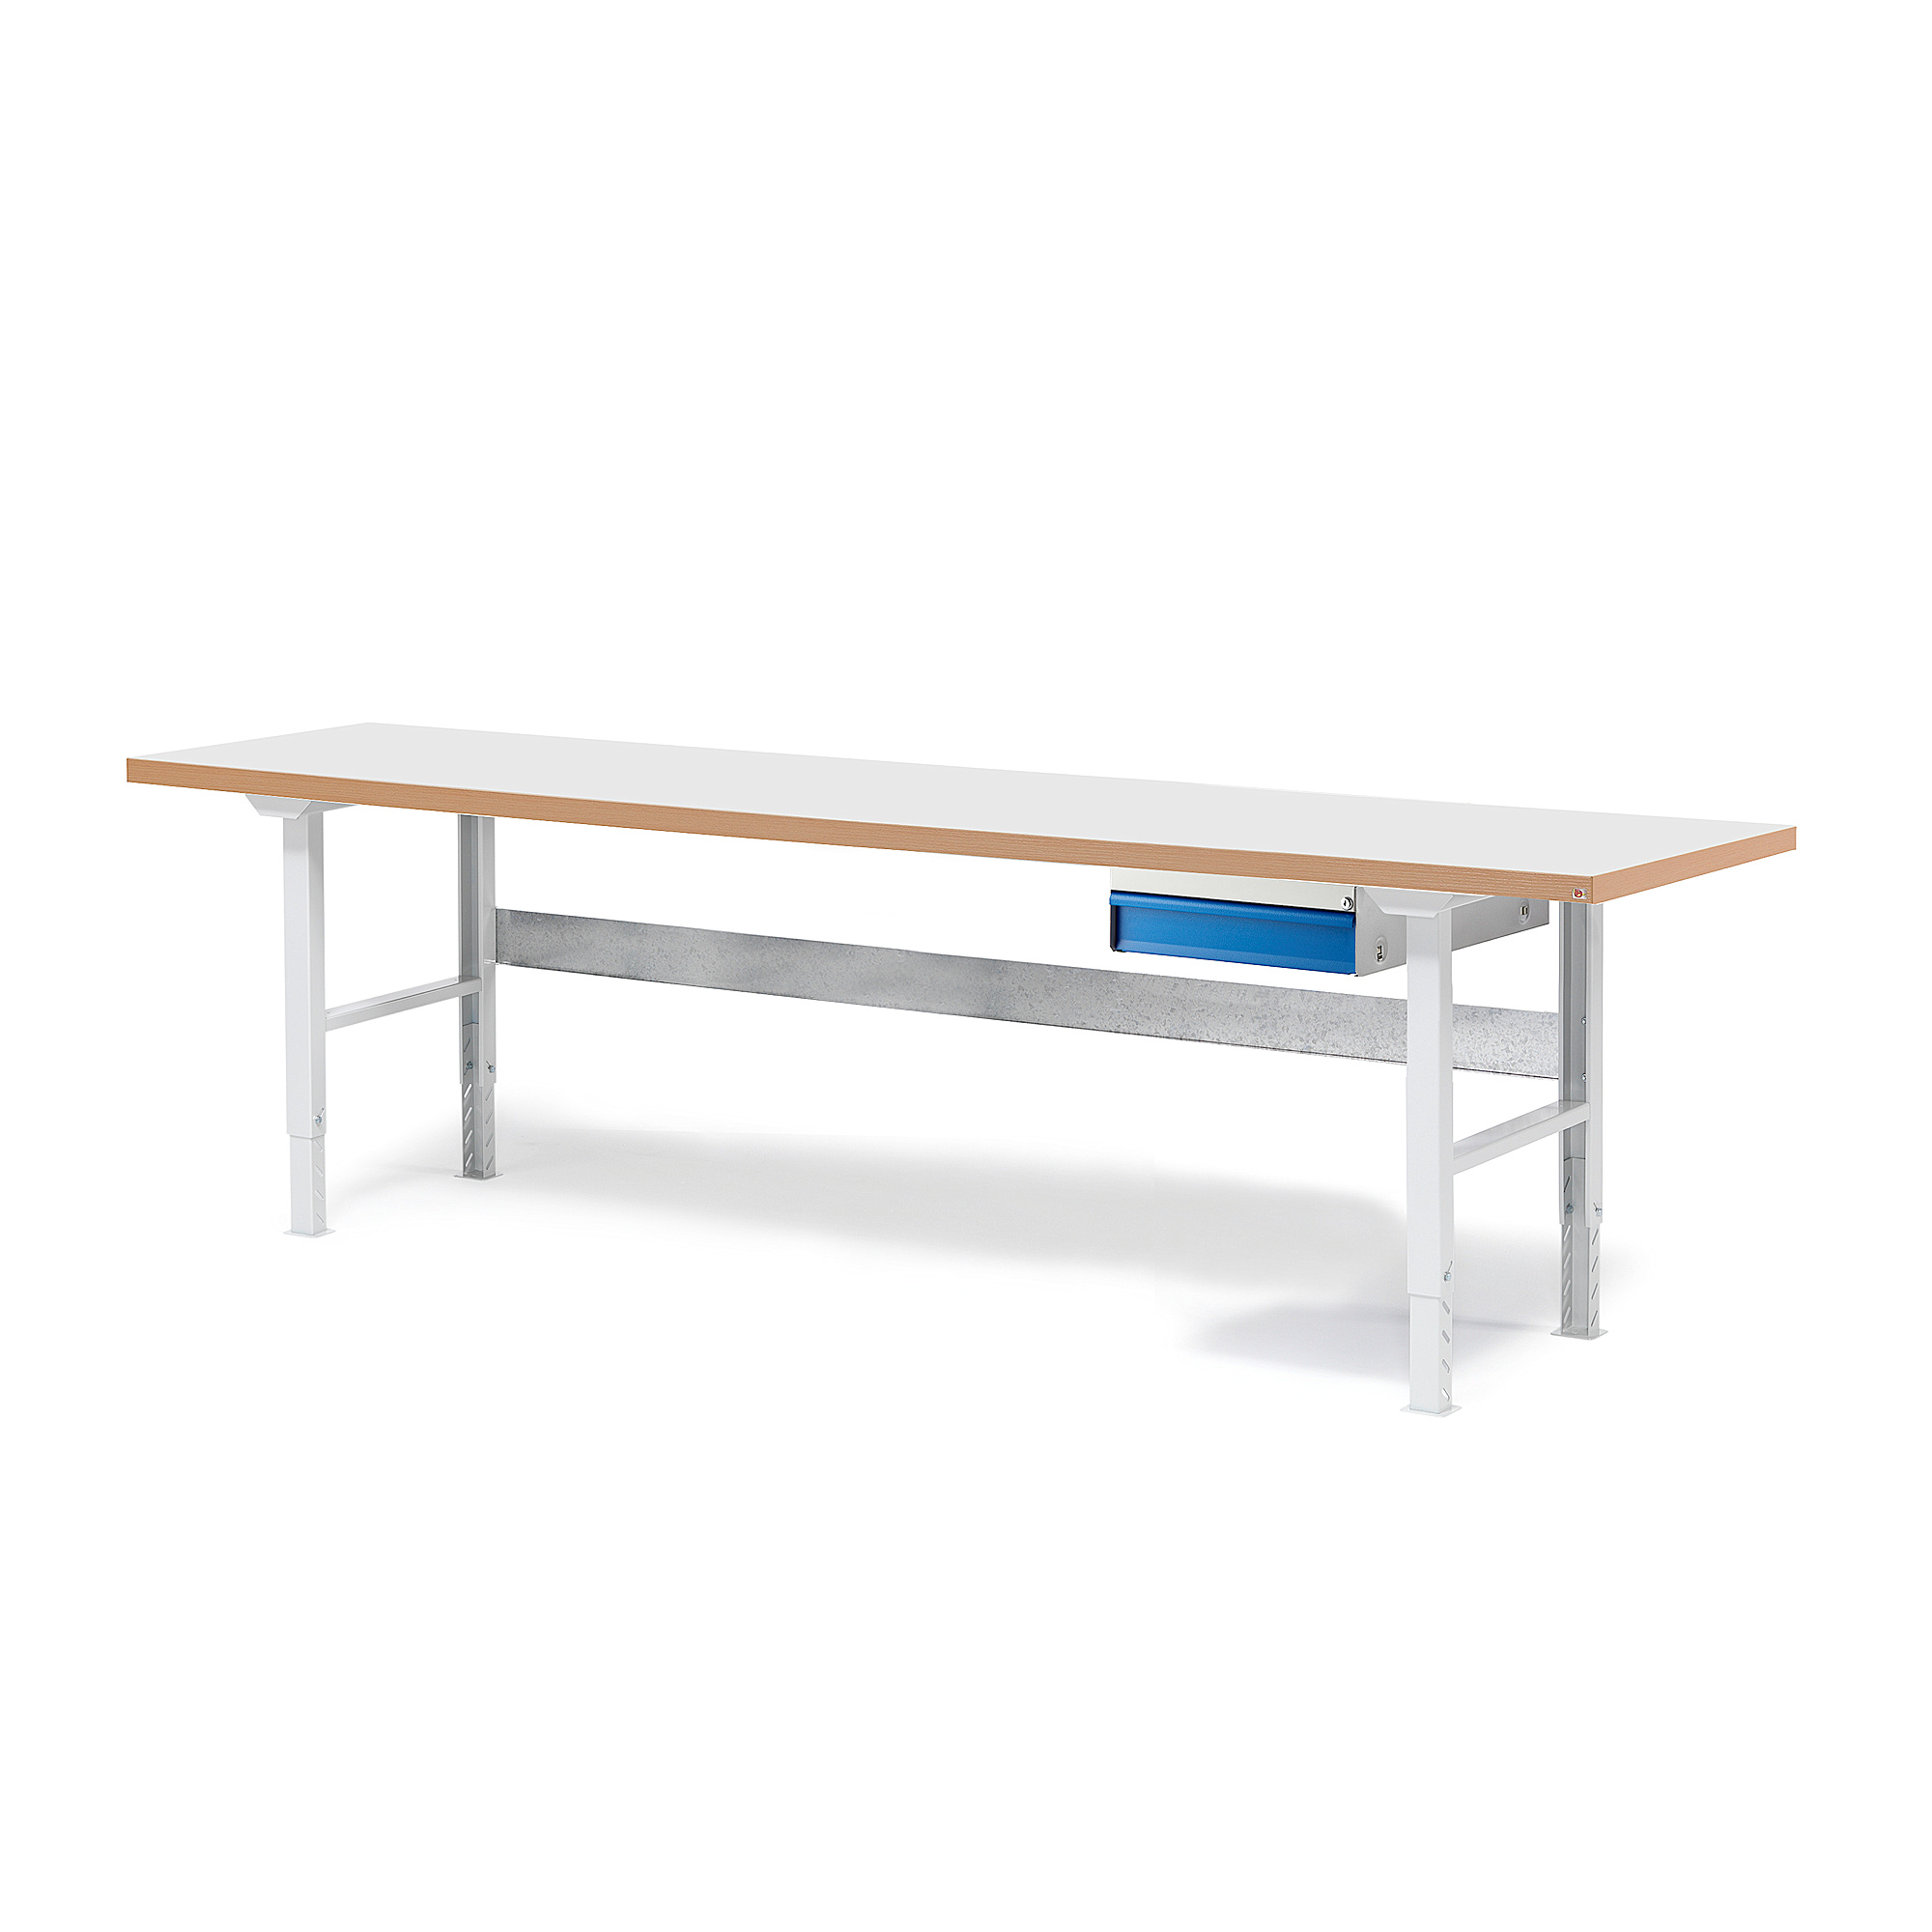 Dílenský stůl SOLID, 2500x800 mm, nosnost 750 kg, 1 zásuvka, laminát